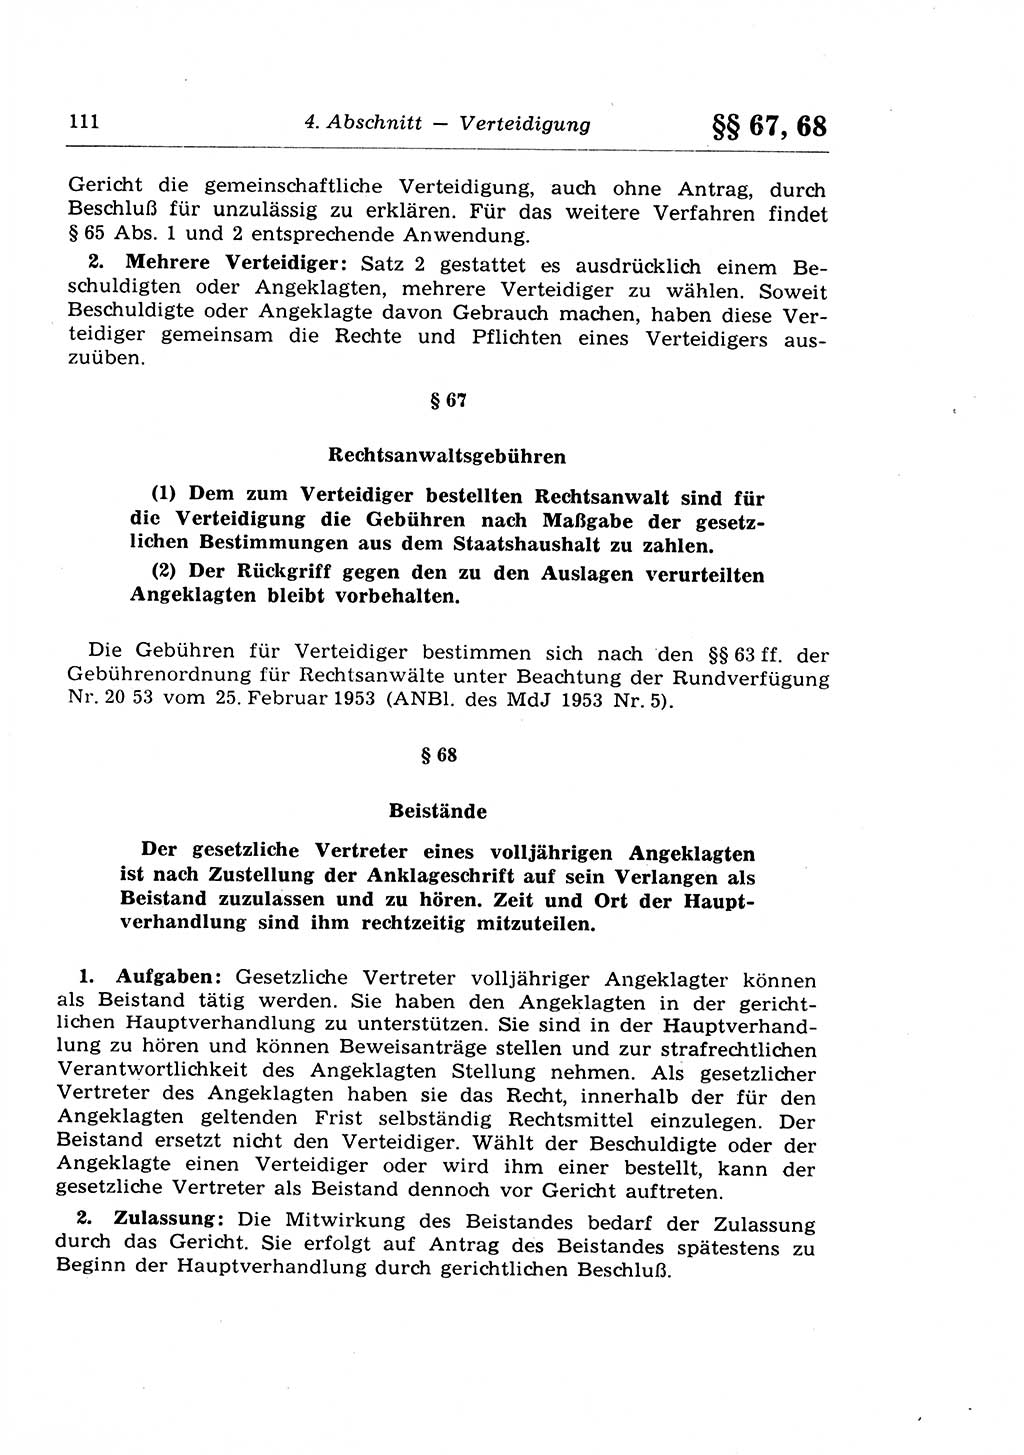 Strafprozeßrecht der DDR (Deutsche Demokratische Republik), Lehrkommentar zur Strafprozeßordnung (StPO) 1968, Seite 111 (Strafprozeßr. DDR Lehrkomm. StPO 19688, S. 111)